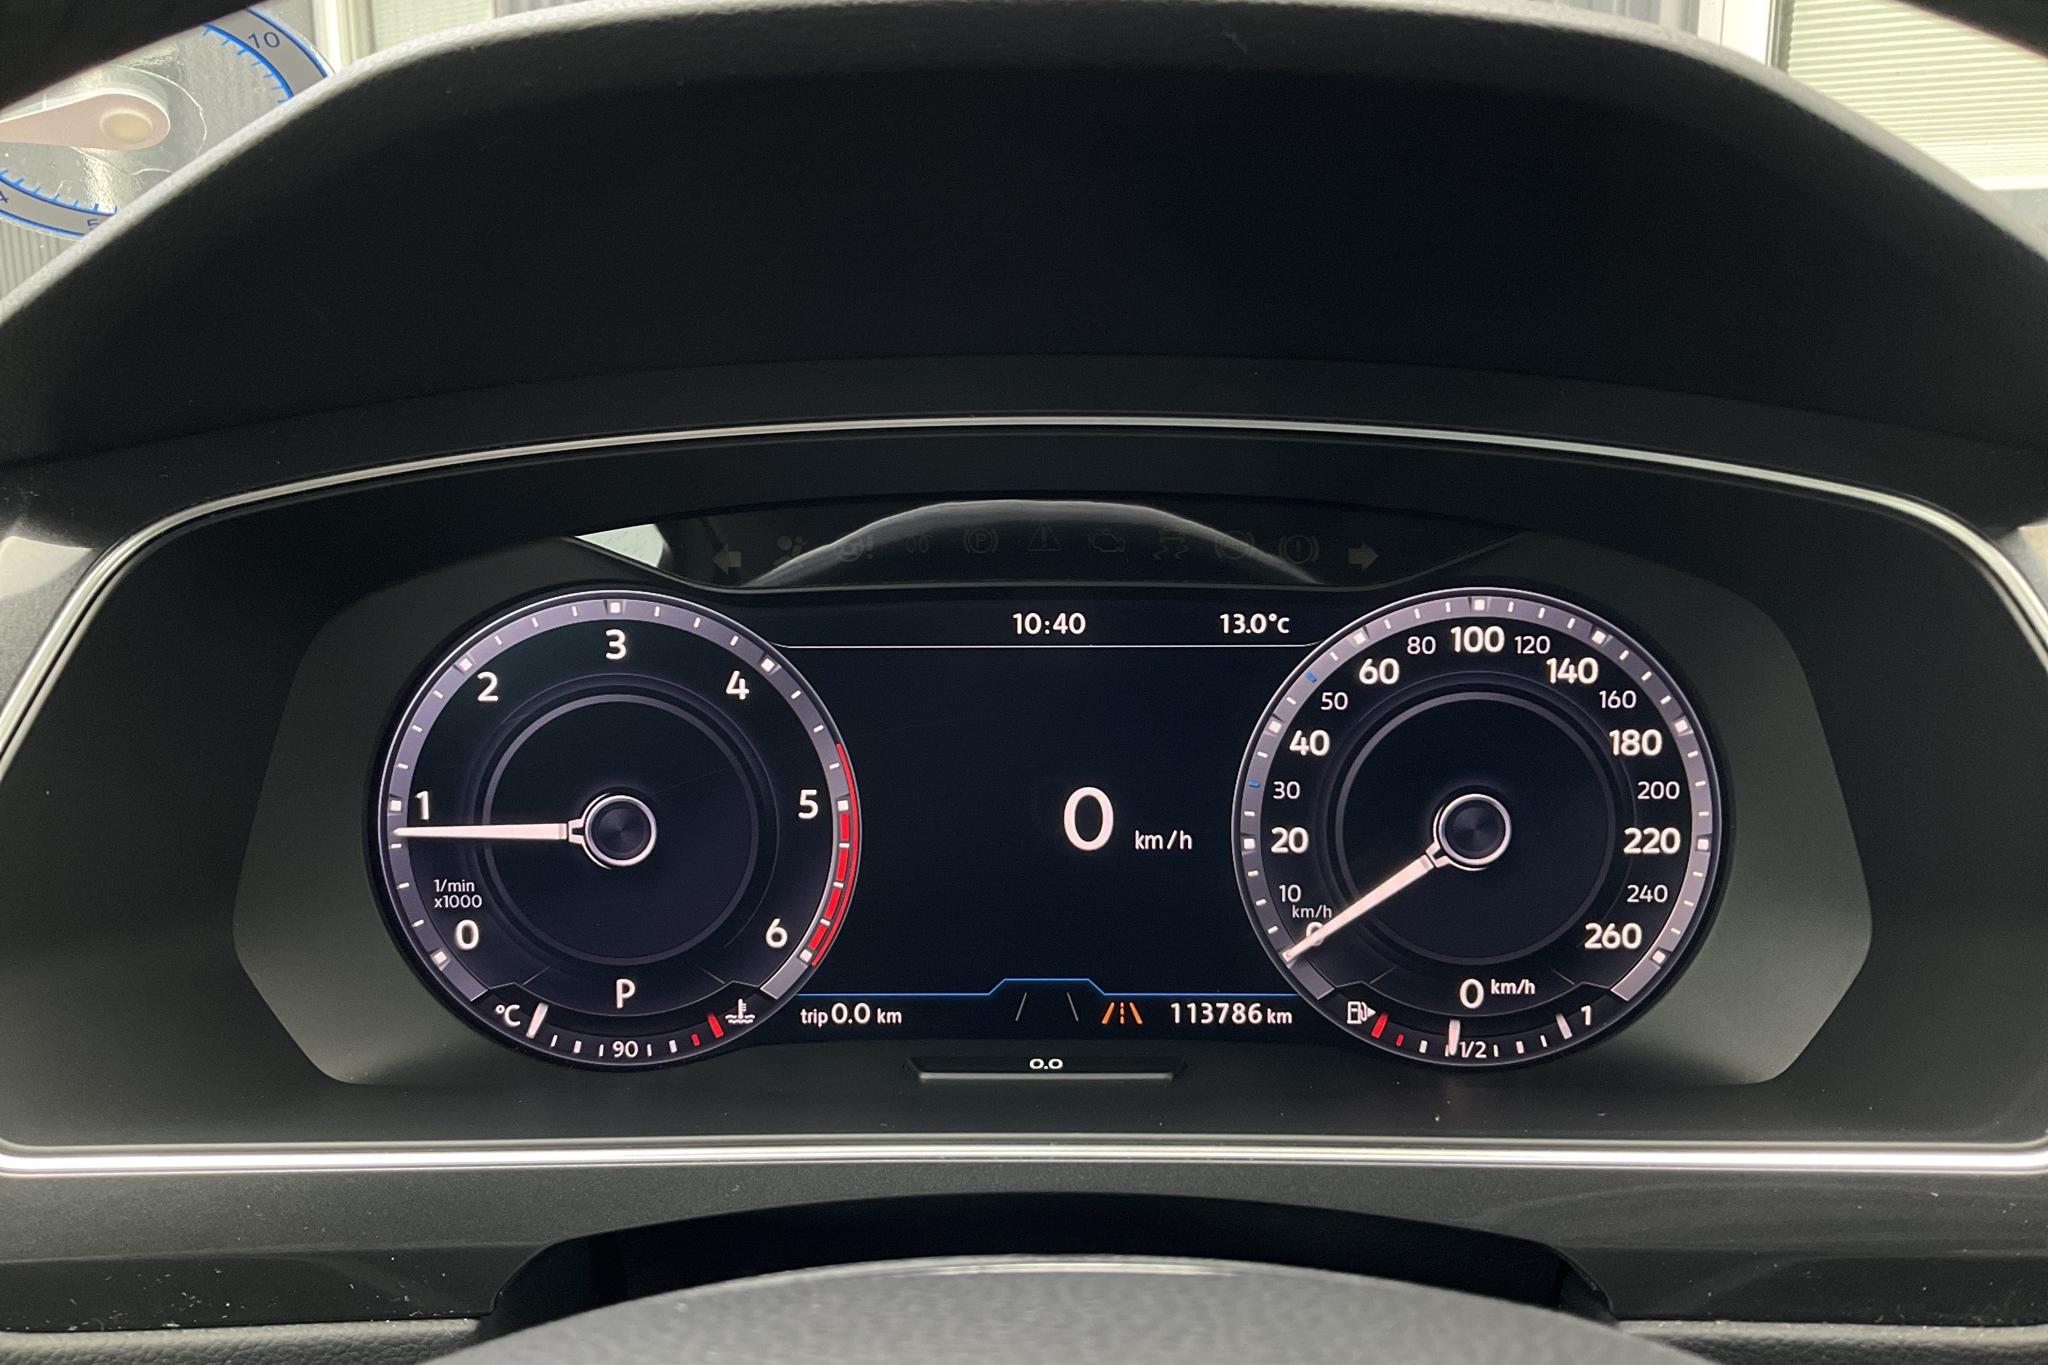 VW Tiguan 2.0 TDI 4MOTION (190hk) - 113 790 km - Automatic - white - 2017